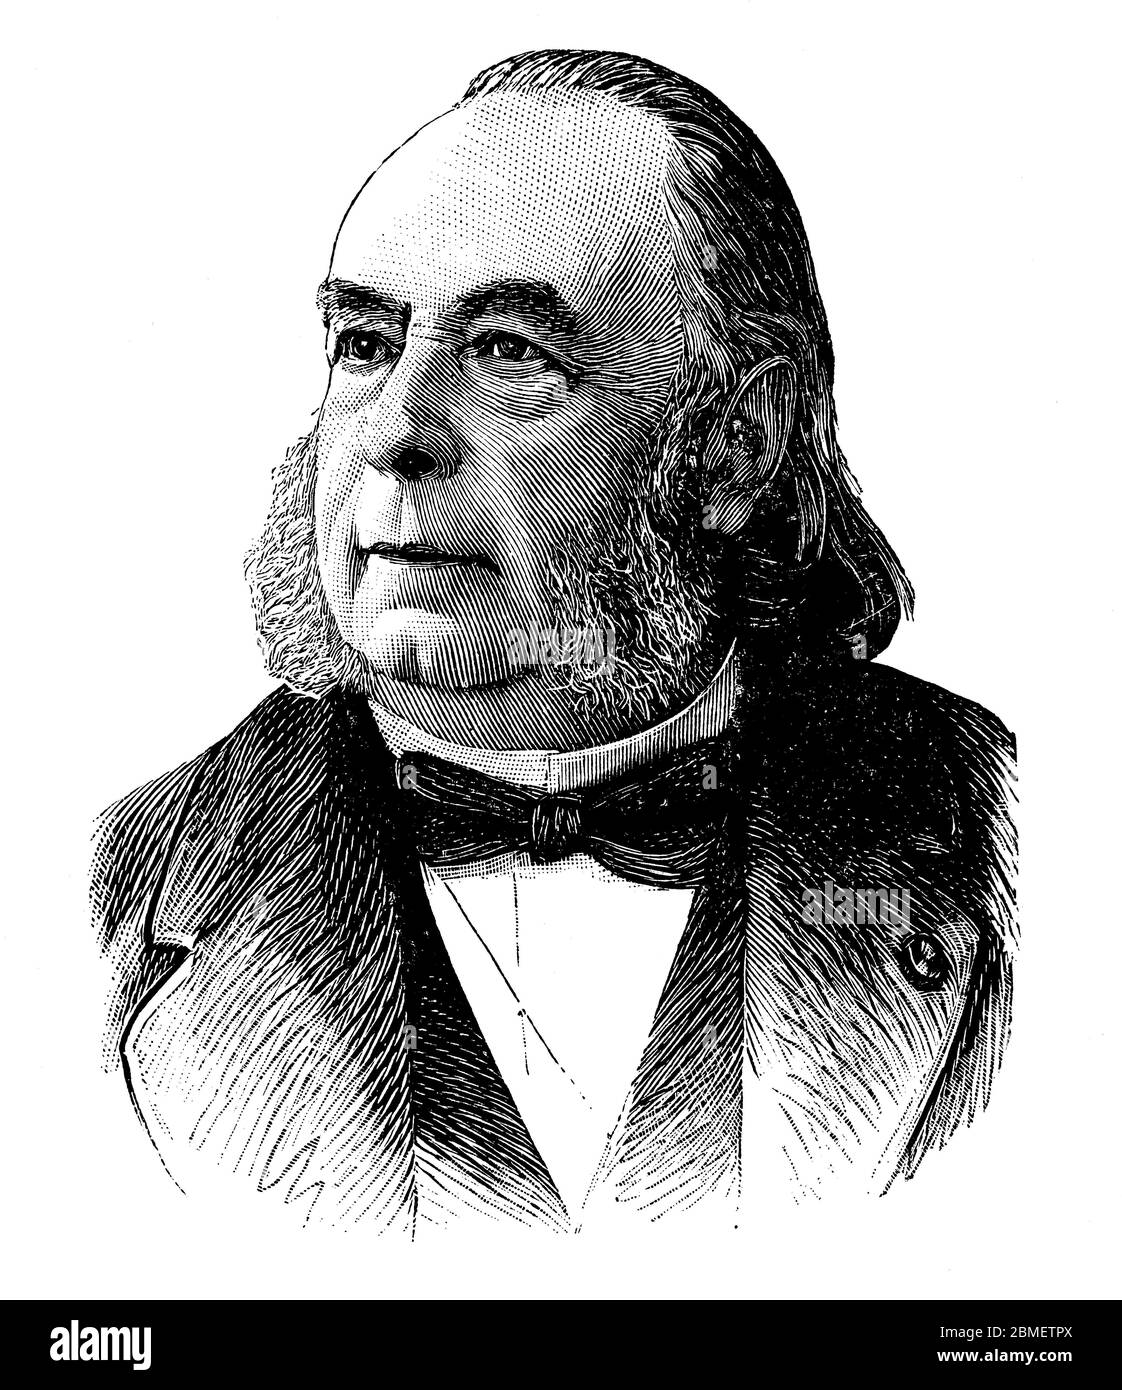 Edmond Frémy (1814-1894), químico francés descubridor del ácido fluorhídrico. Grabado de 1896. Stock Photo